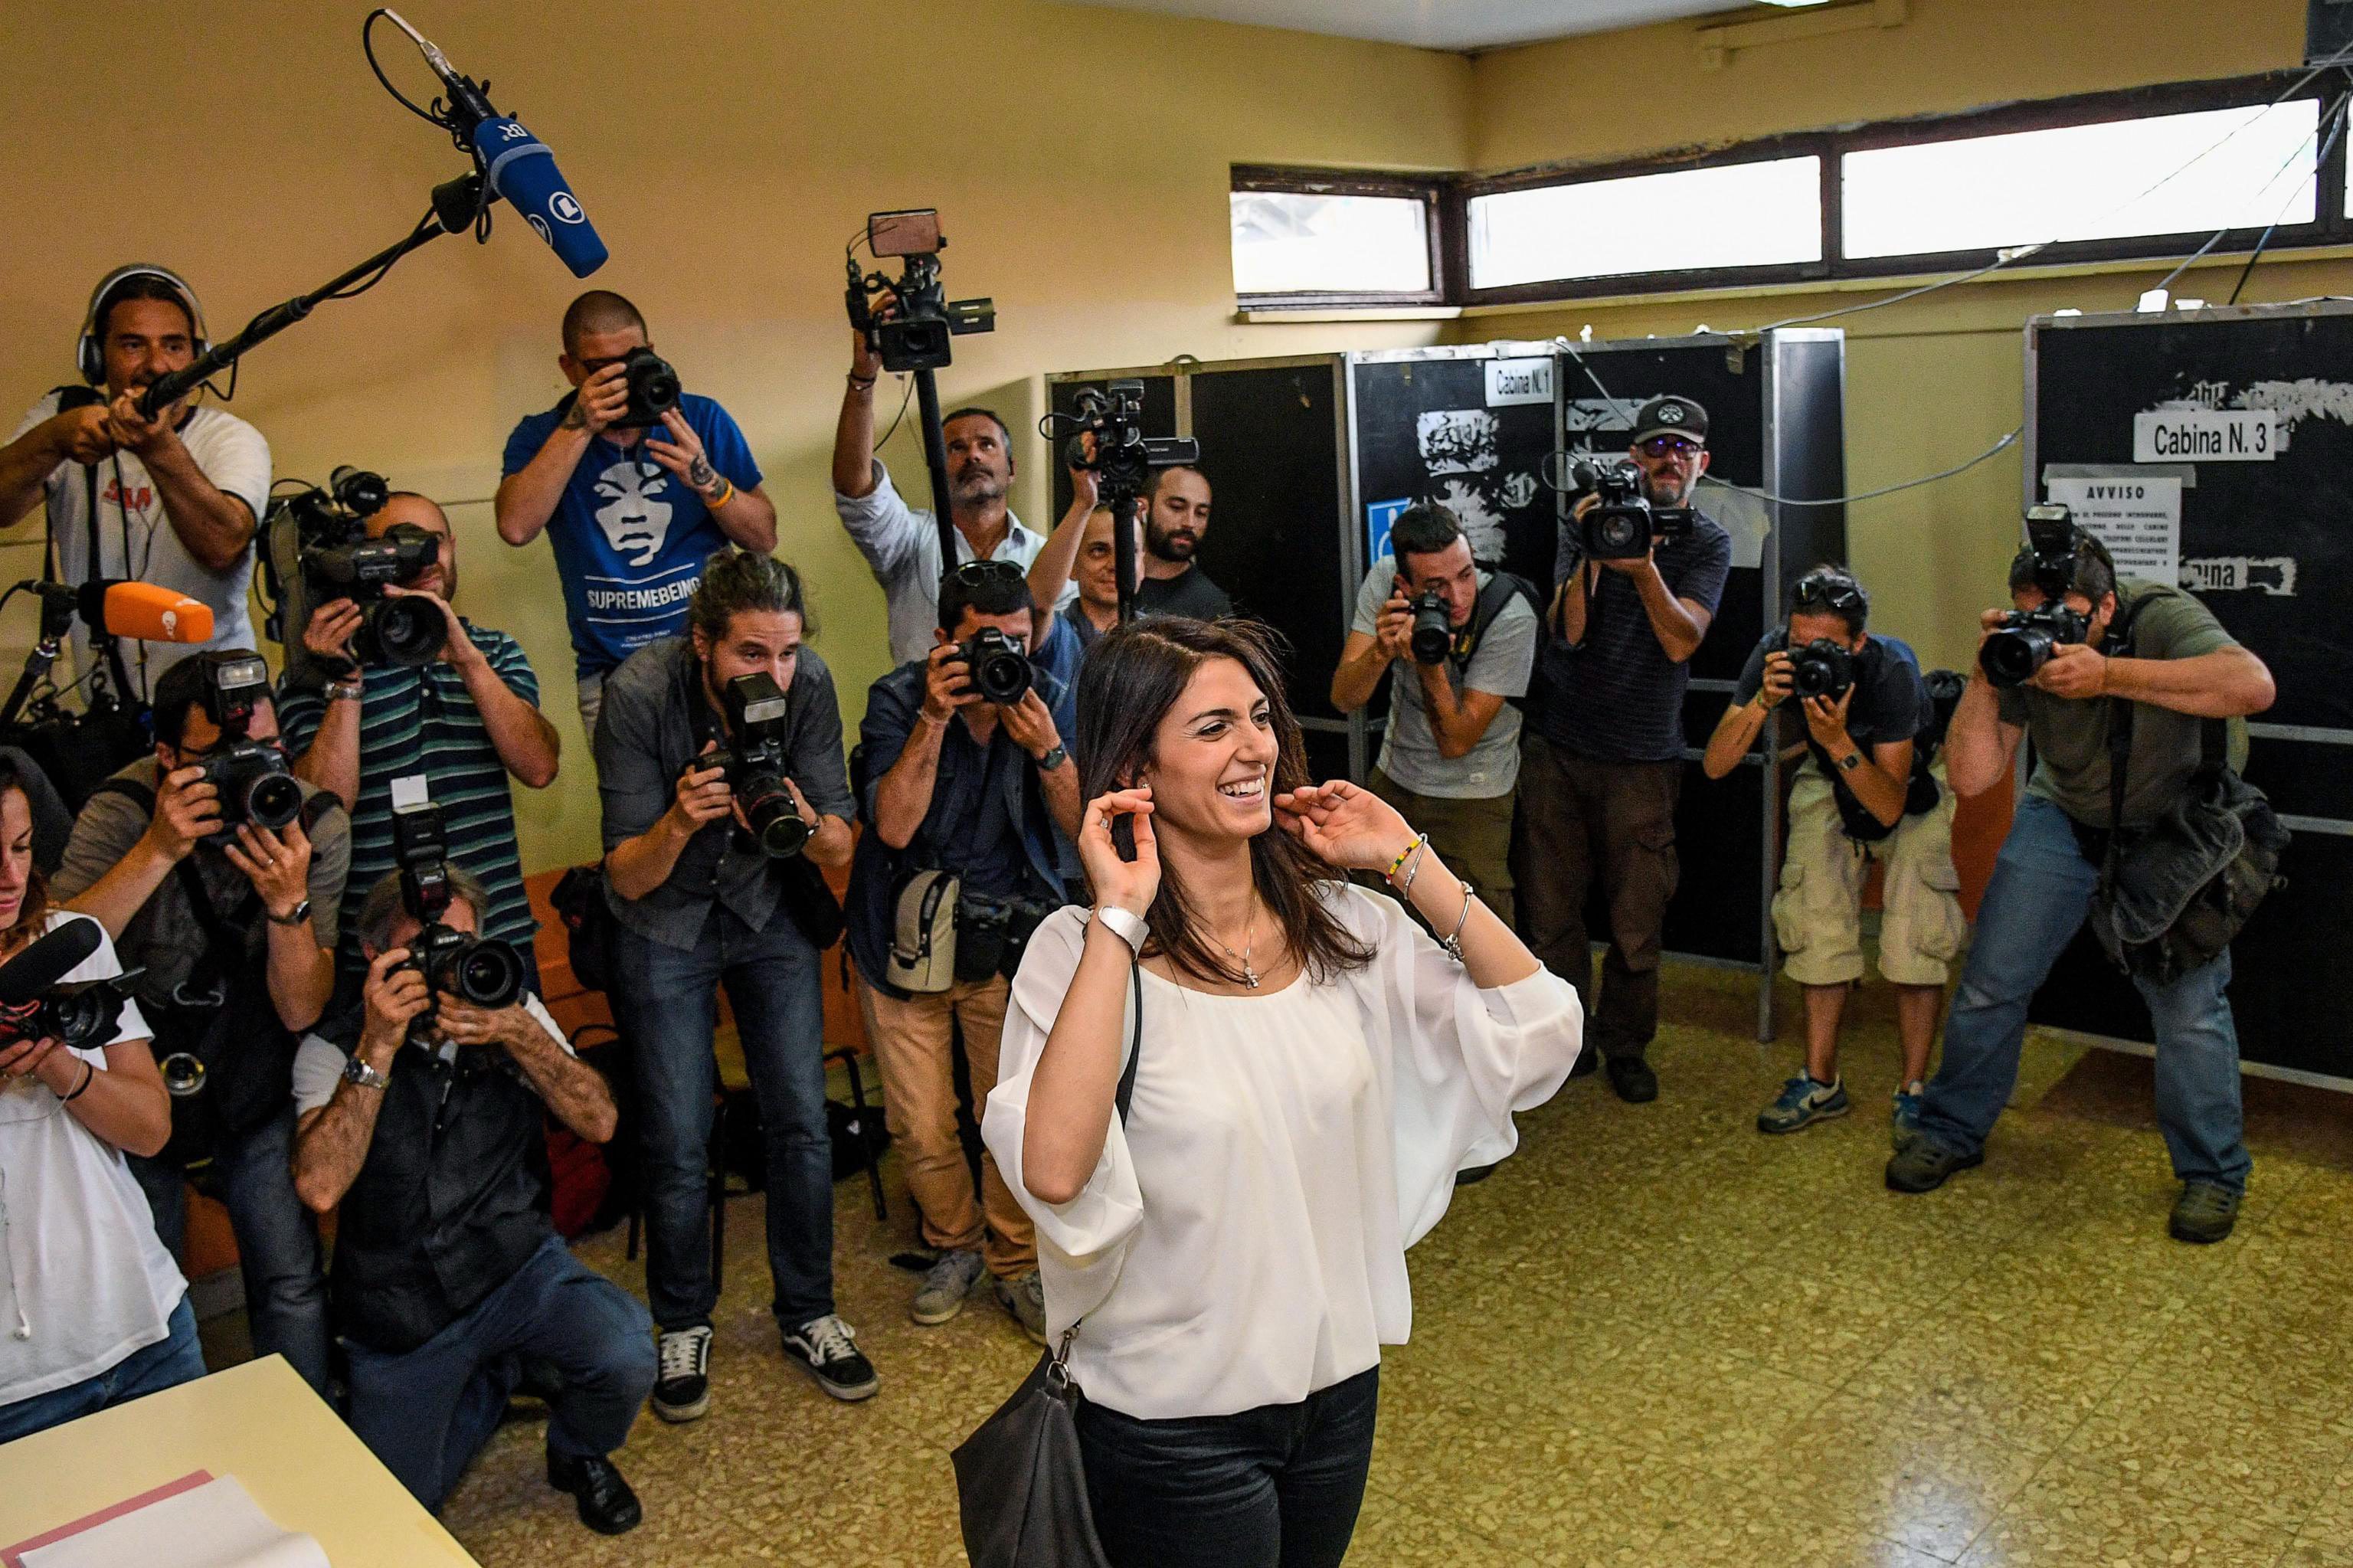 Την πρώτη ('πεντάστερη') γυναίκα δήμαρχο αναμένεται να εκλέξει η Ρώμη